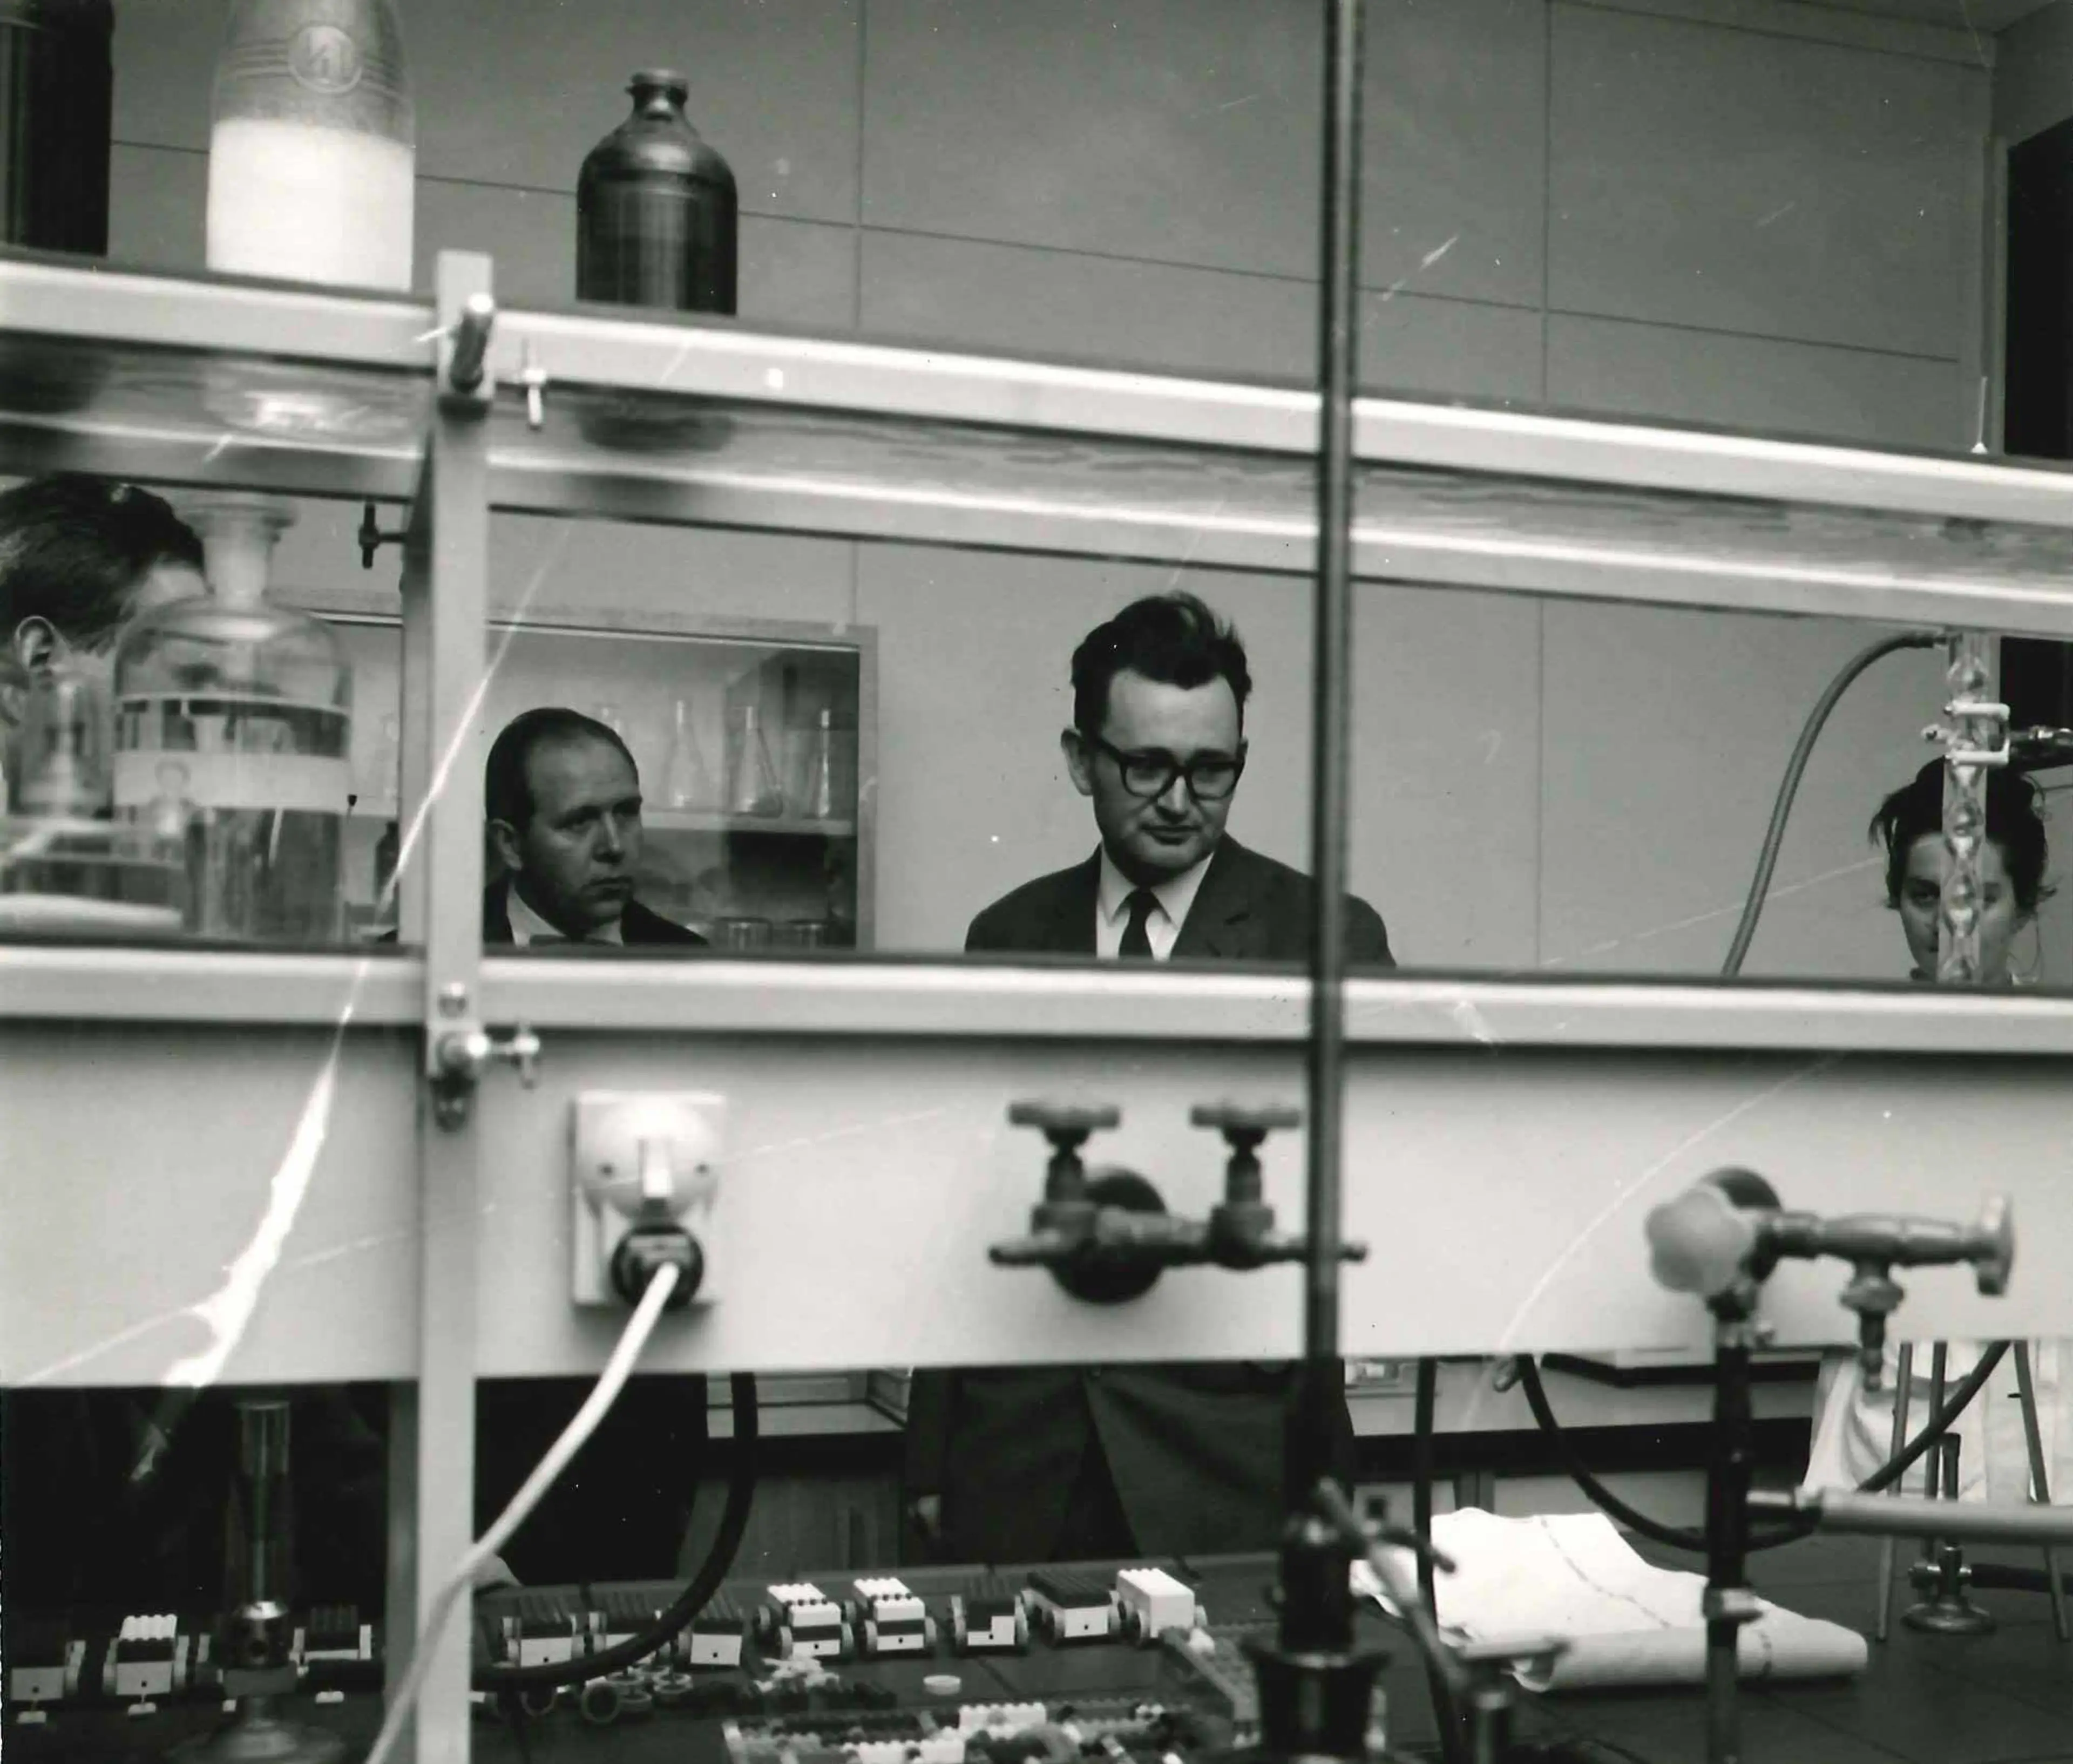 Hans Schiess in a lab